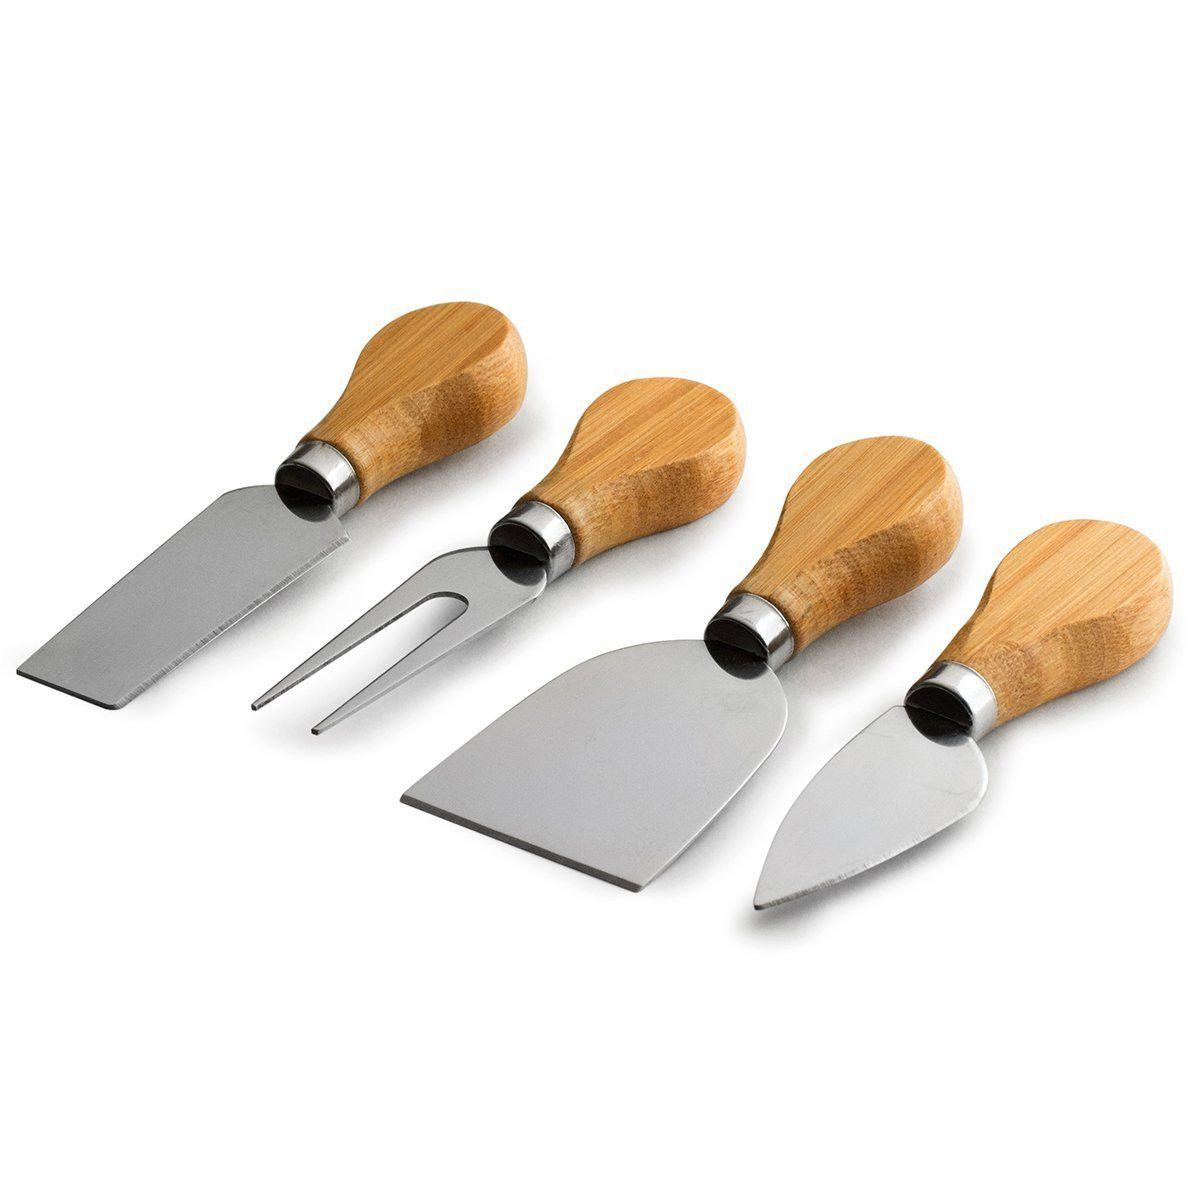 Bambusowa deska do serwowania serów z nożami